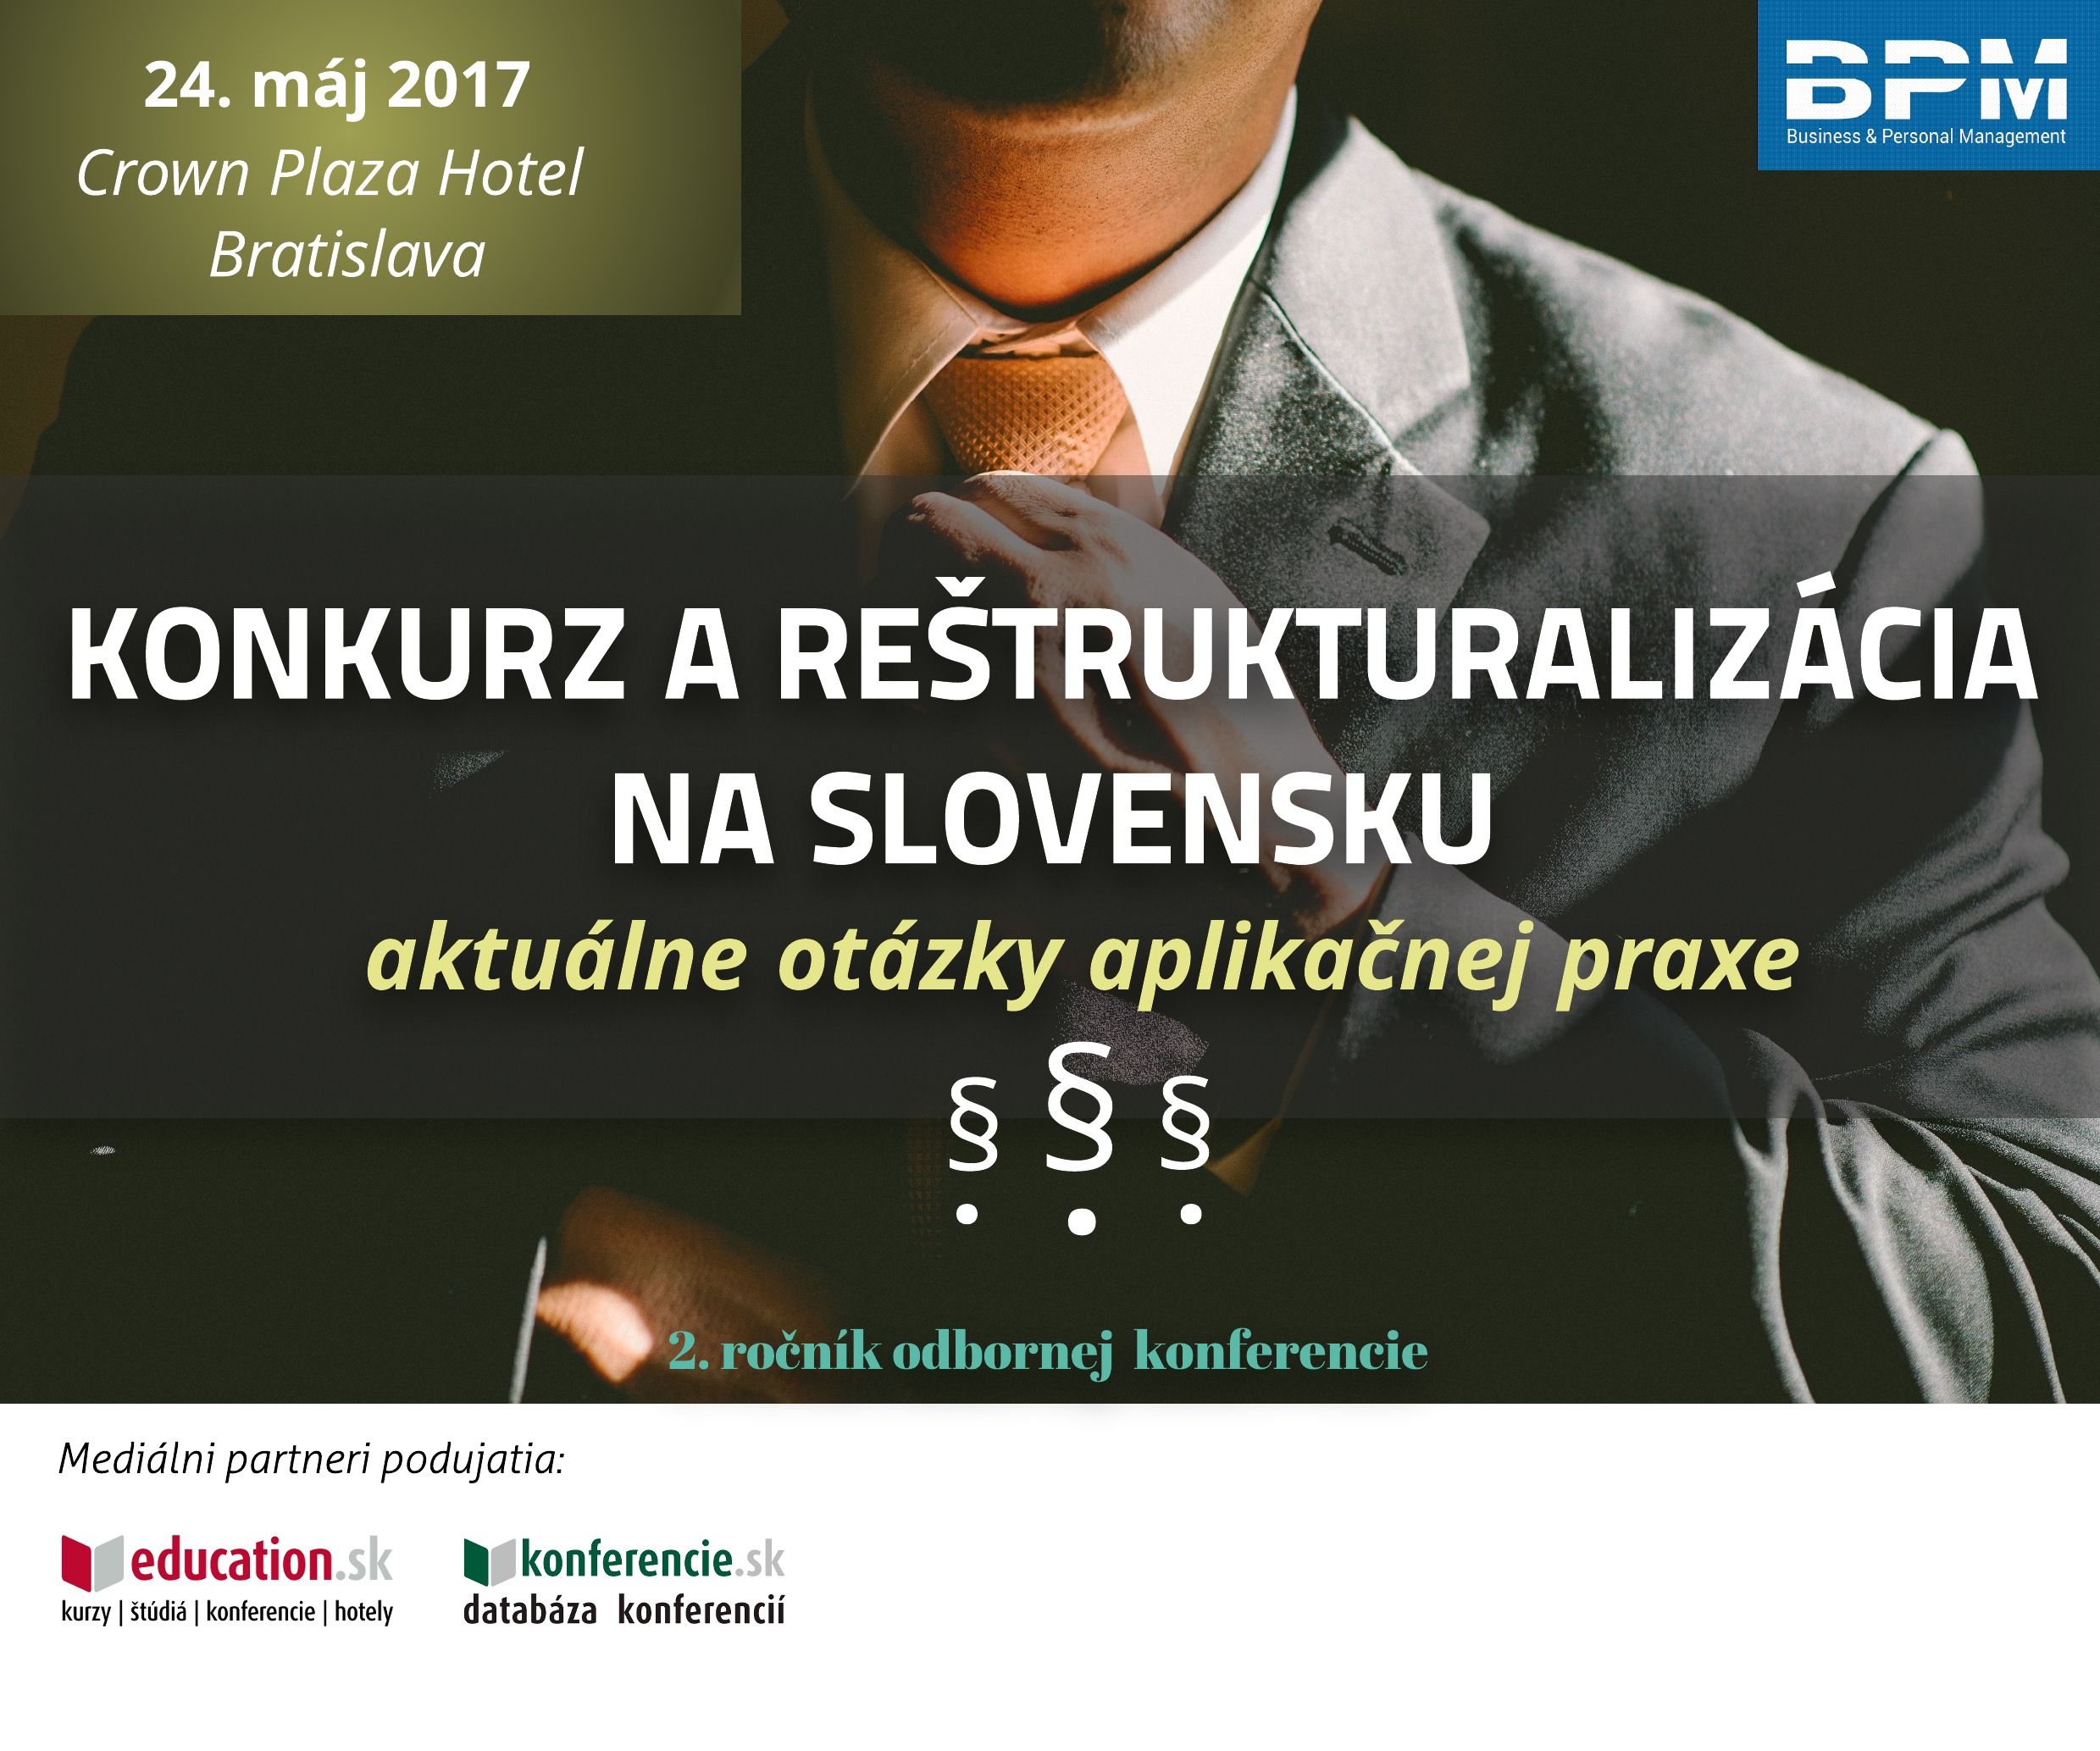 Konkurz a reštrukturalizácia na Slovensku - aktuálne otázky aplikačnej praxe